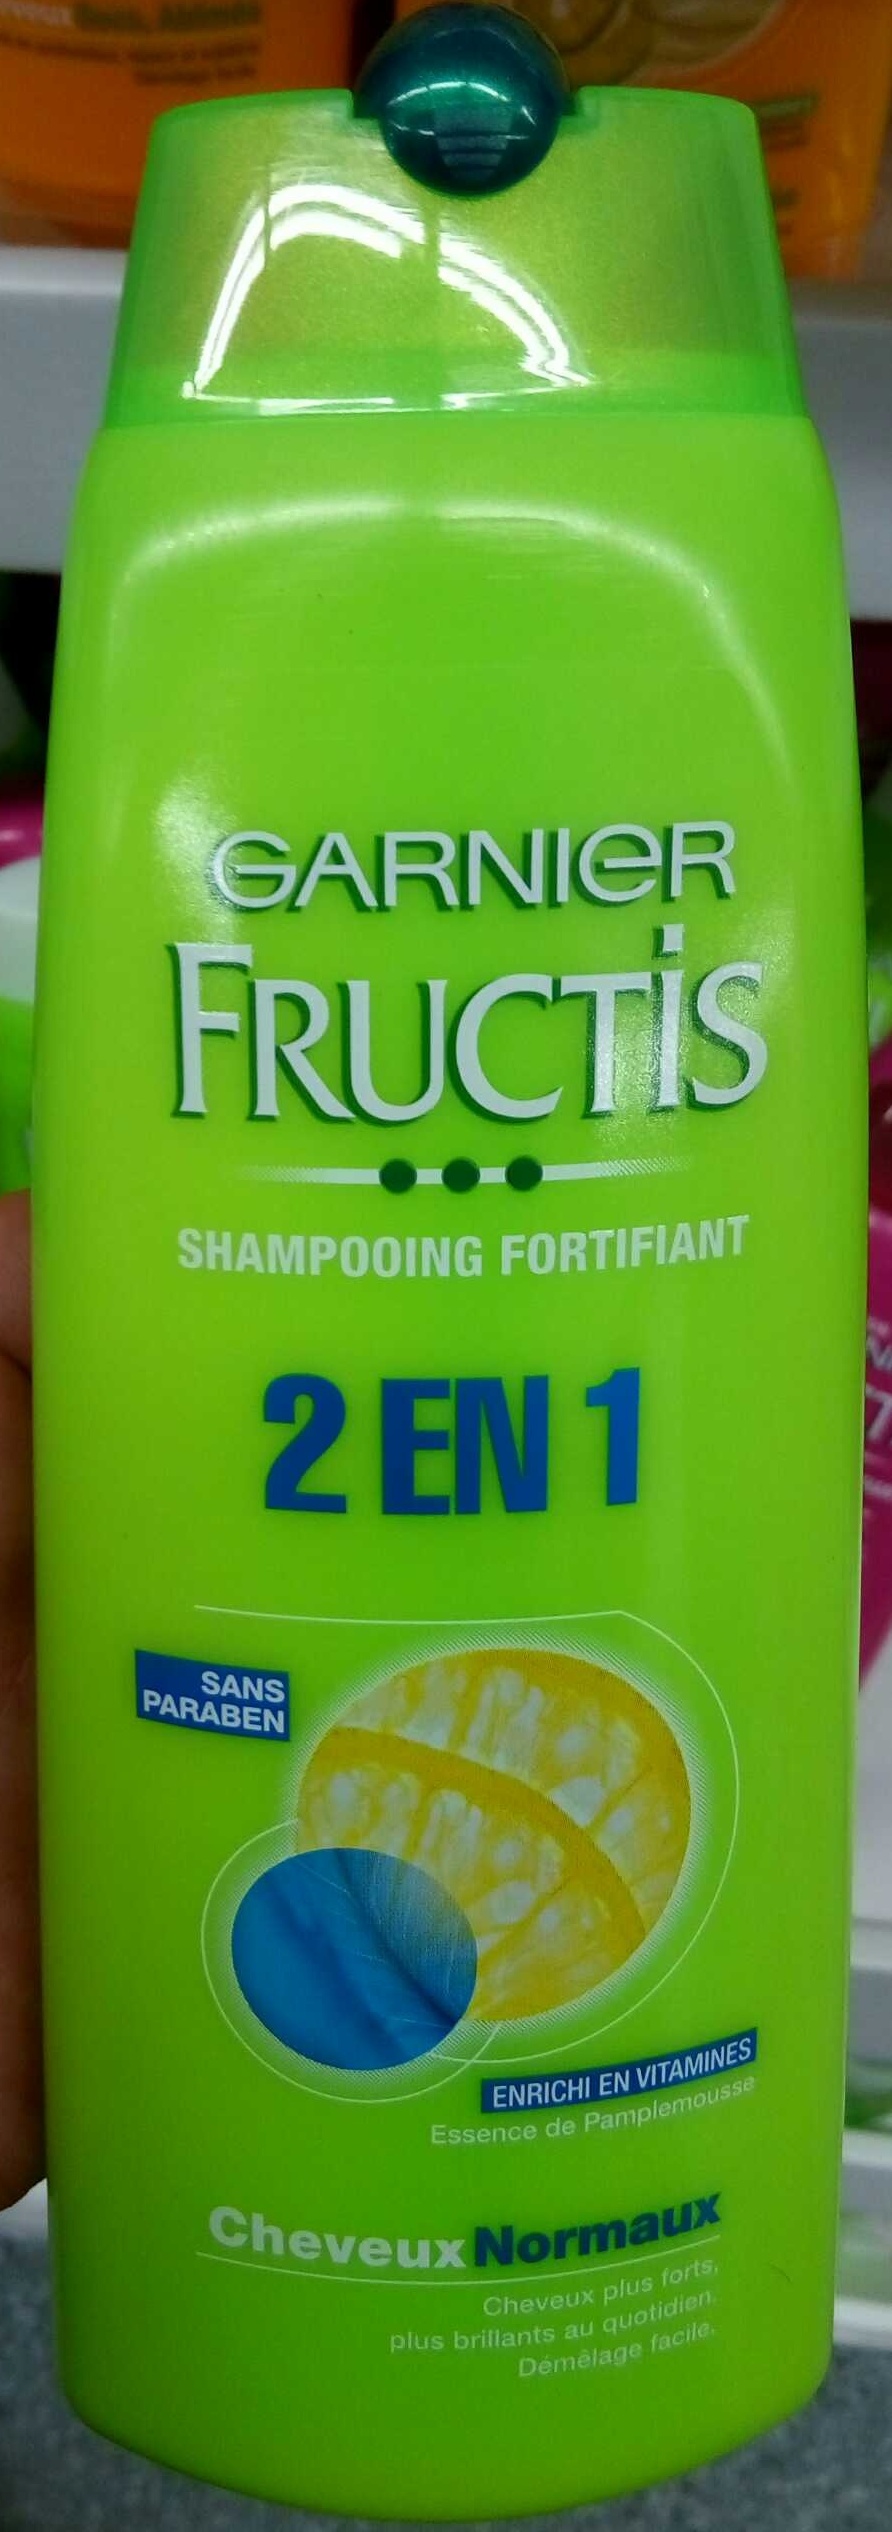 Fructis Shampooing fortifiant 2 en 1 - Produkt - fr